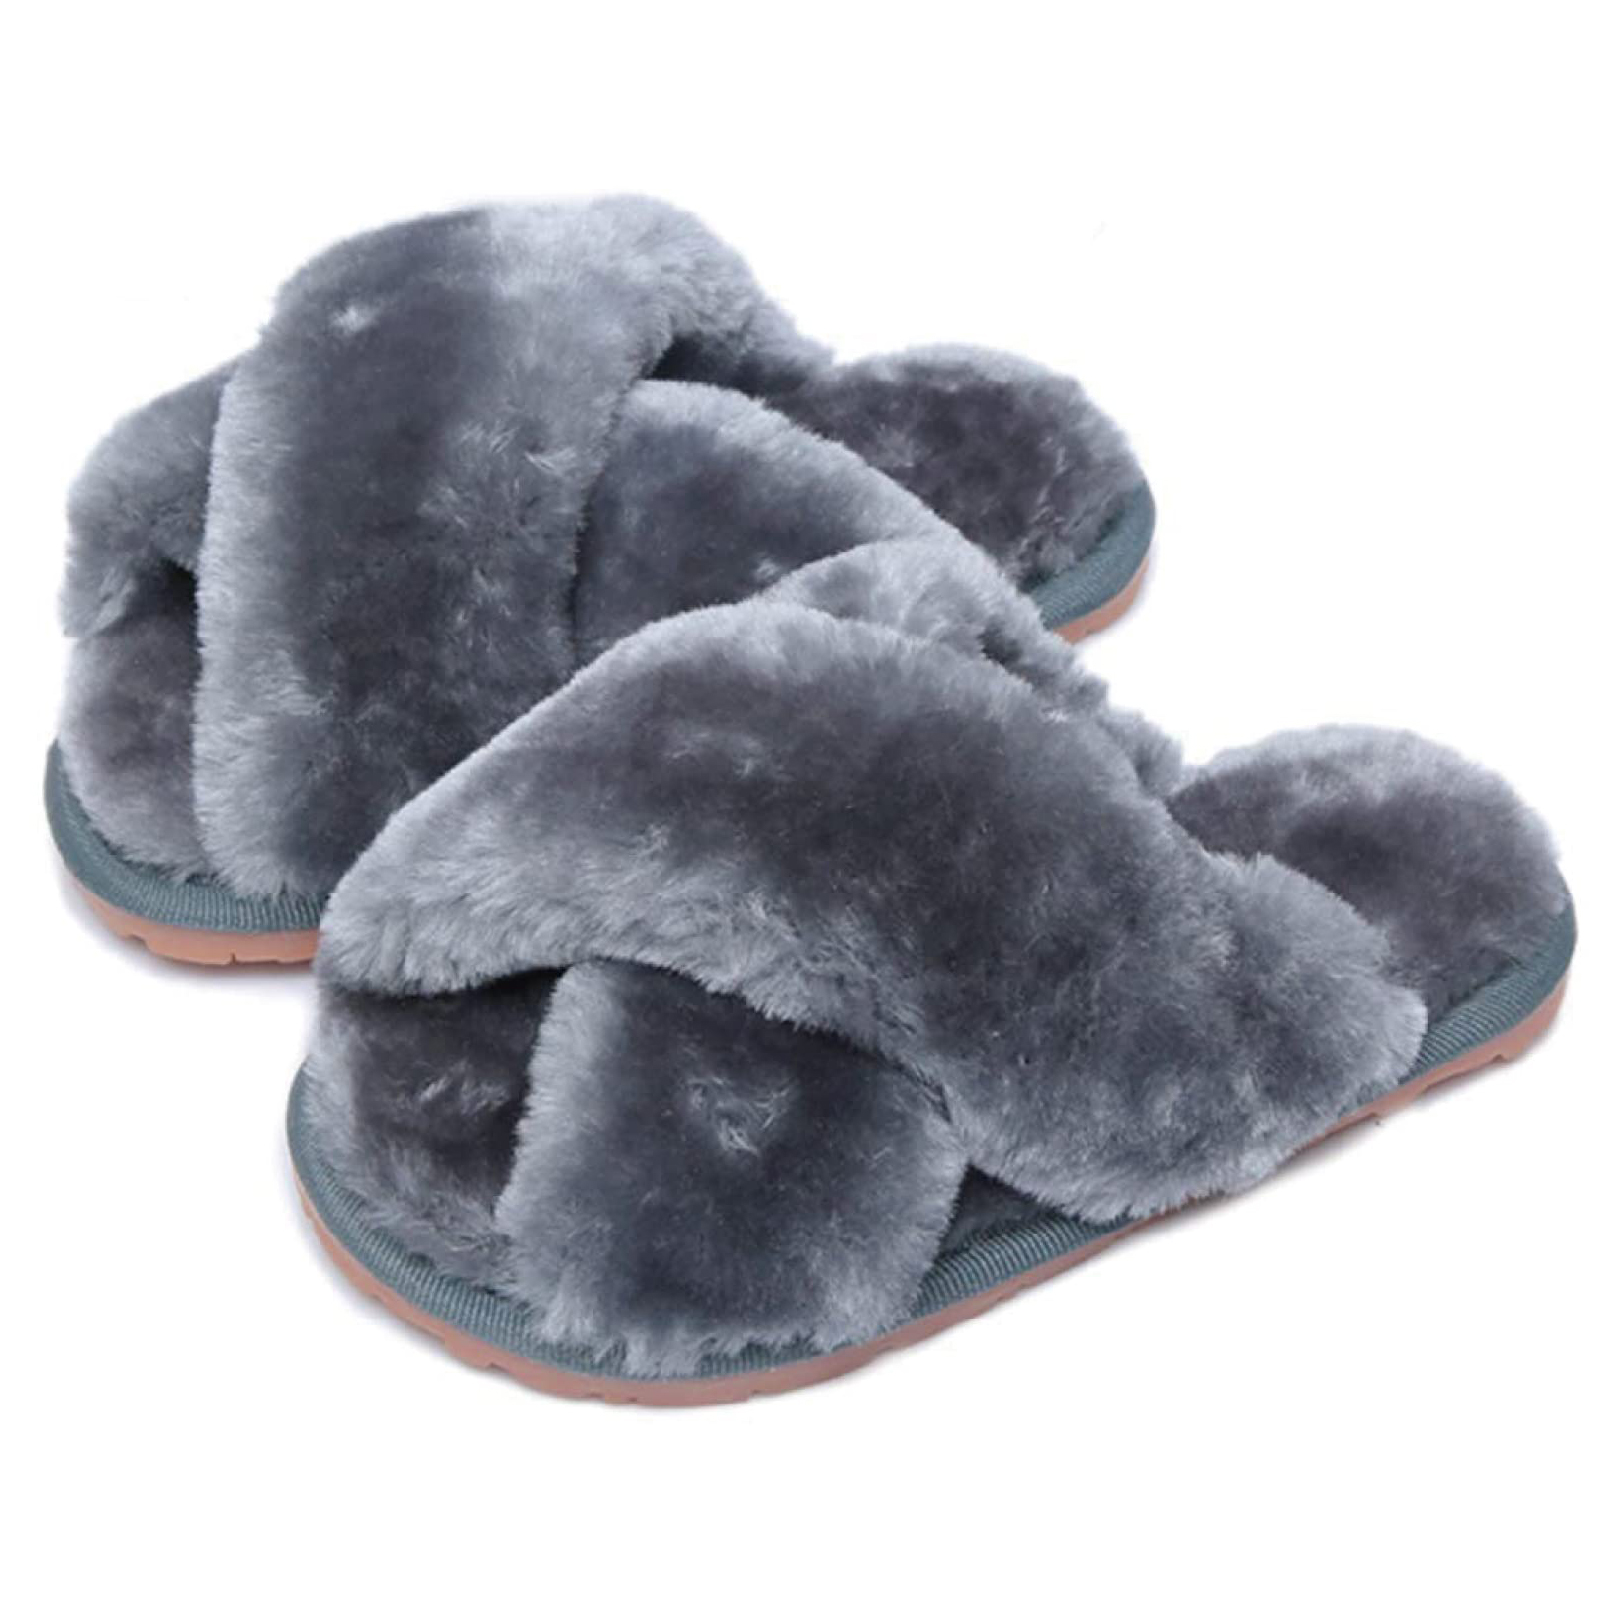 Drecage Kids Fluffy Slippers for Girls Open Toe Warm Fuzzy Slippers ...